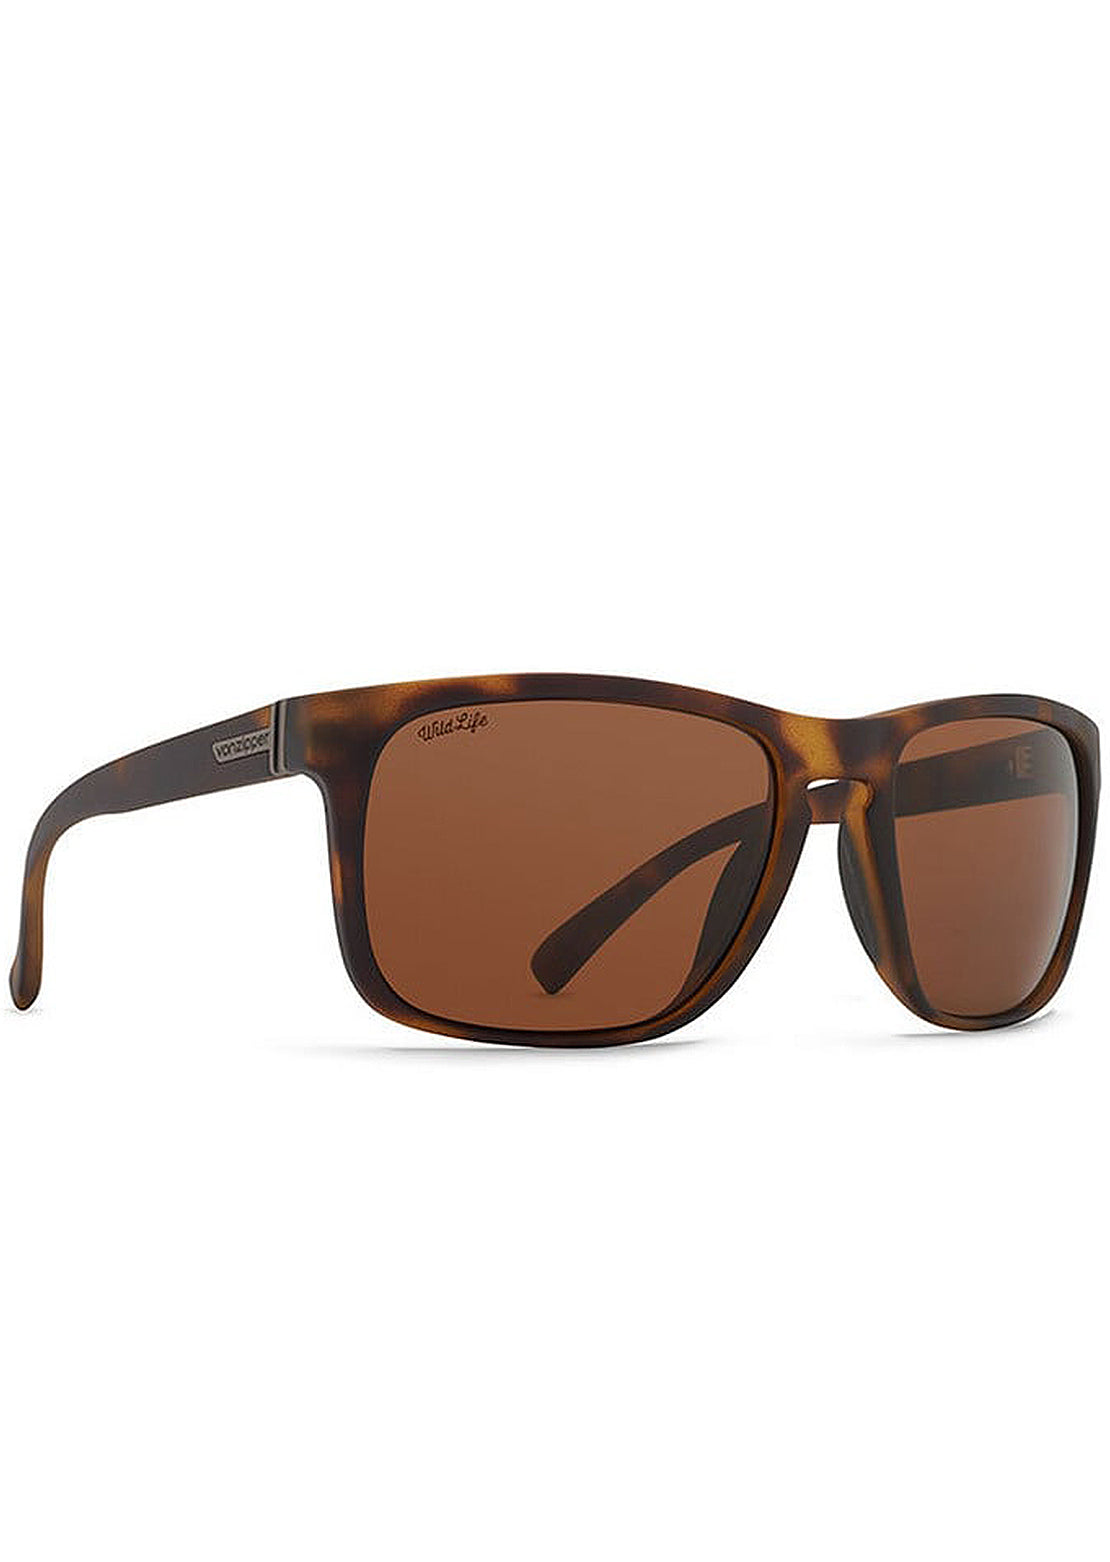 Von Zipper Men&#39;s Lomax Polarized Sunglasses Tortoise/Wild Bronze Polarized